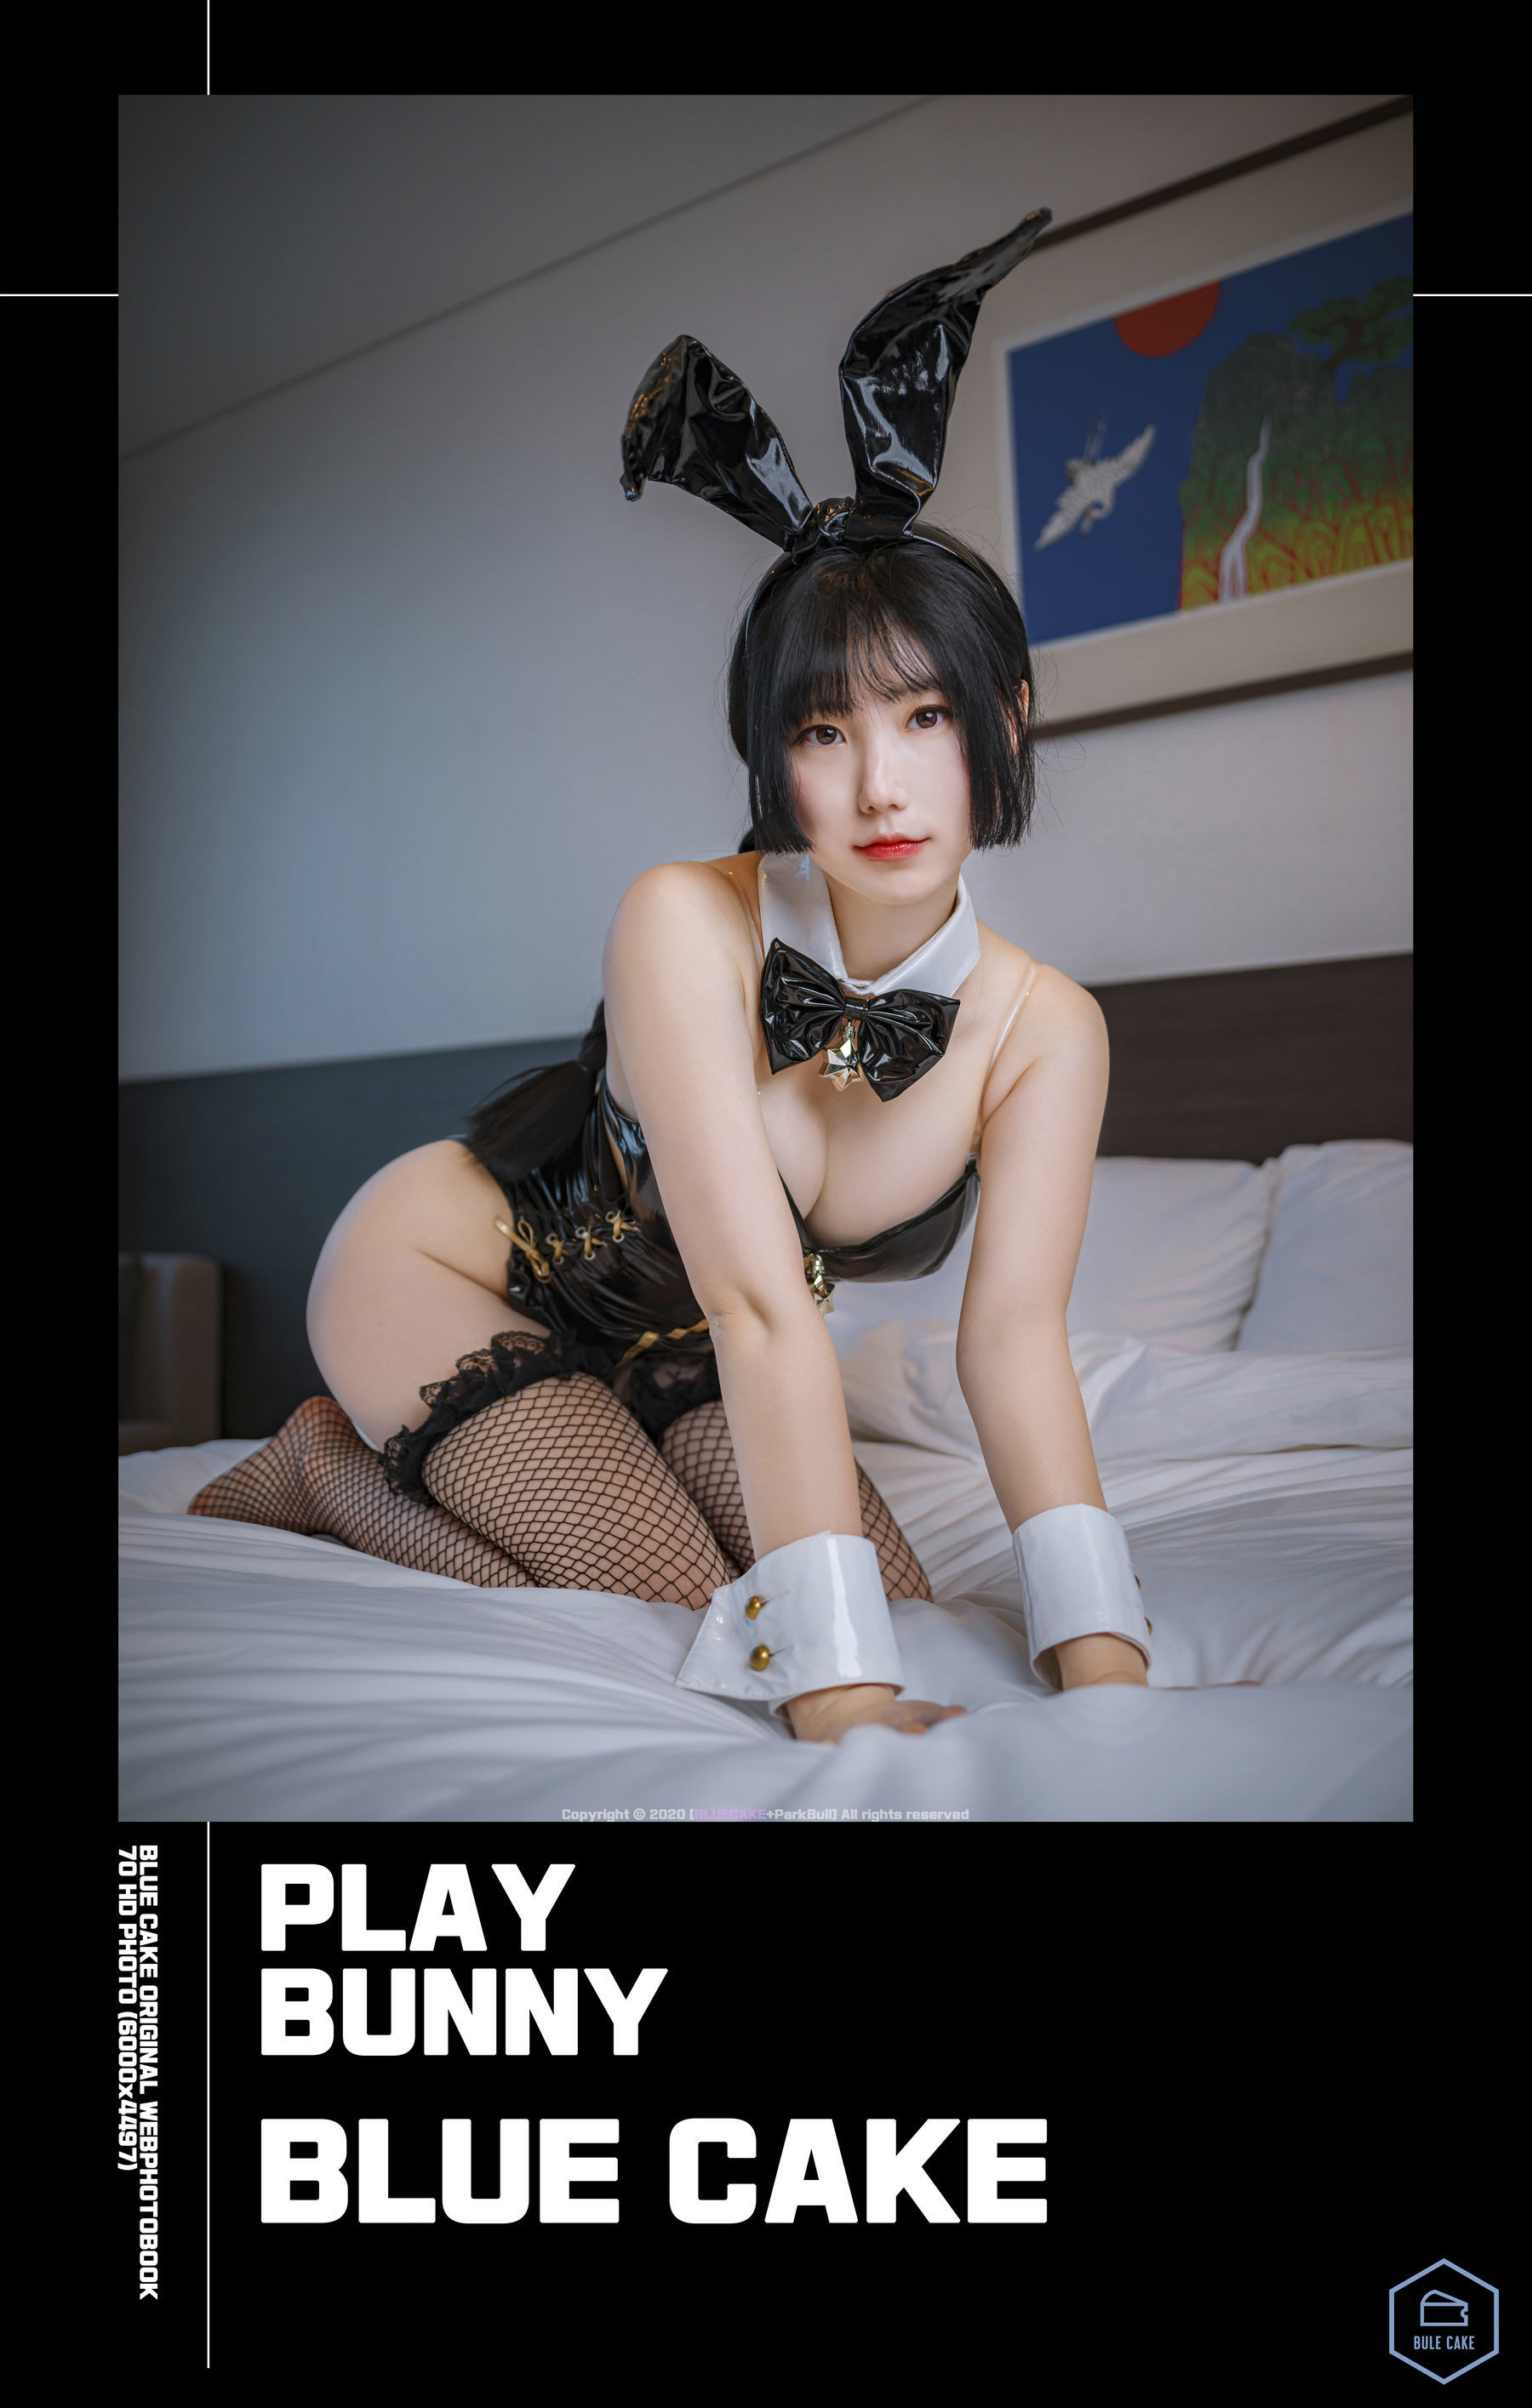 [BLUECAKE]  Jamong - Play Bunny